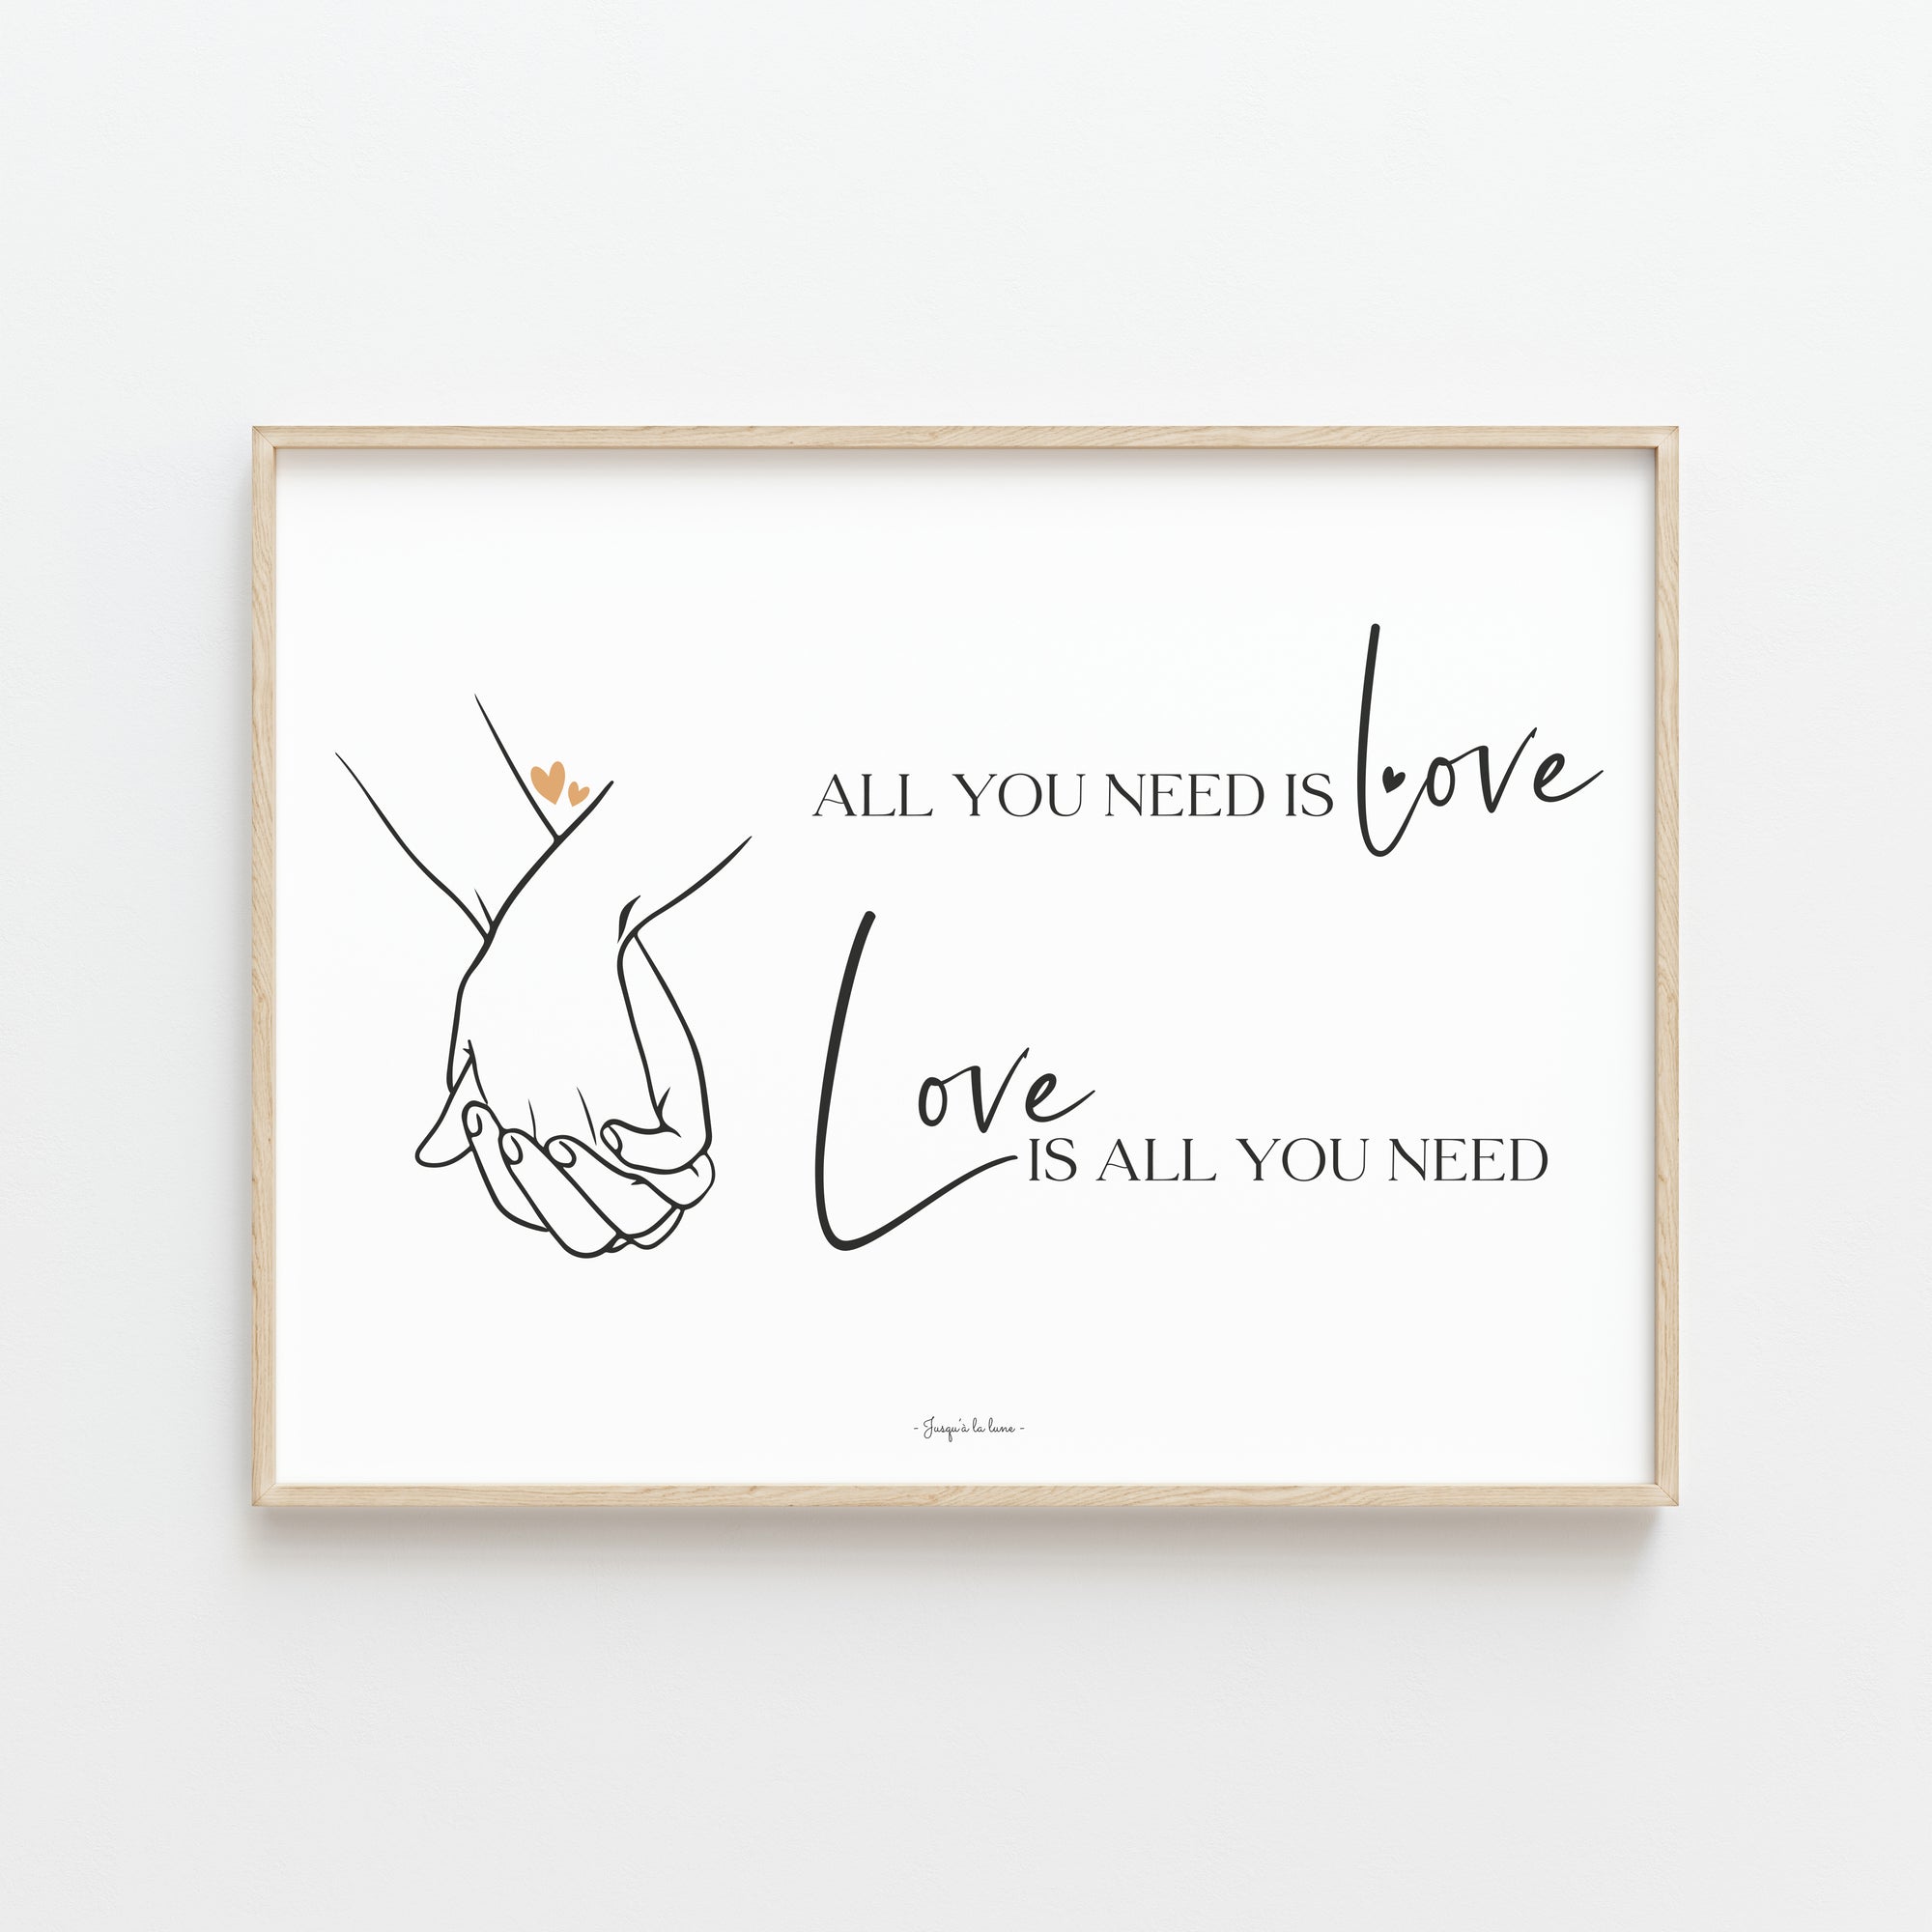 EXPRIMEZ VOS SENTIMENTS AVEC L'AFFICHE "ALL YOU NEED IS LOVE"